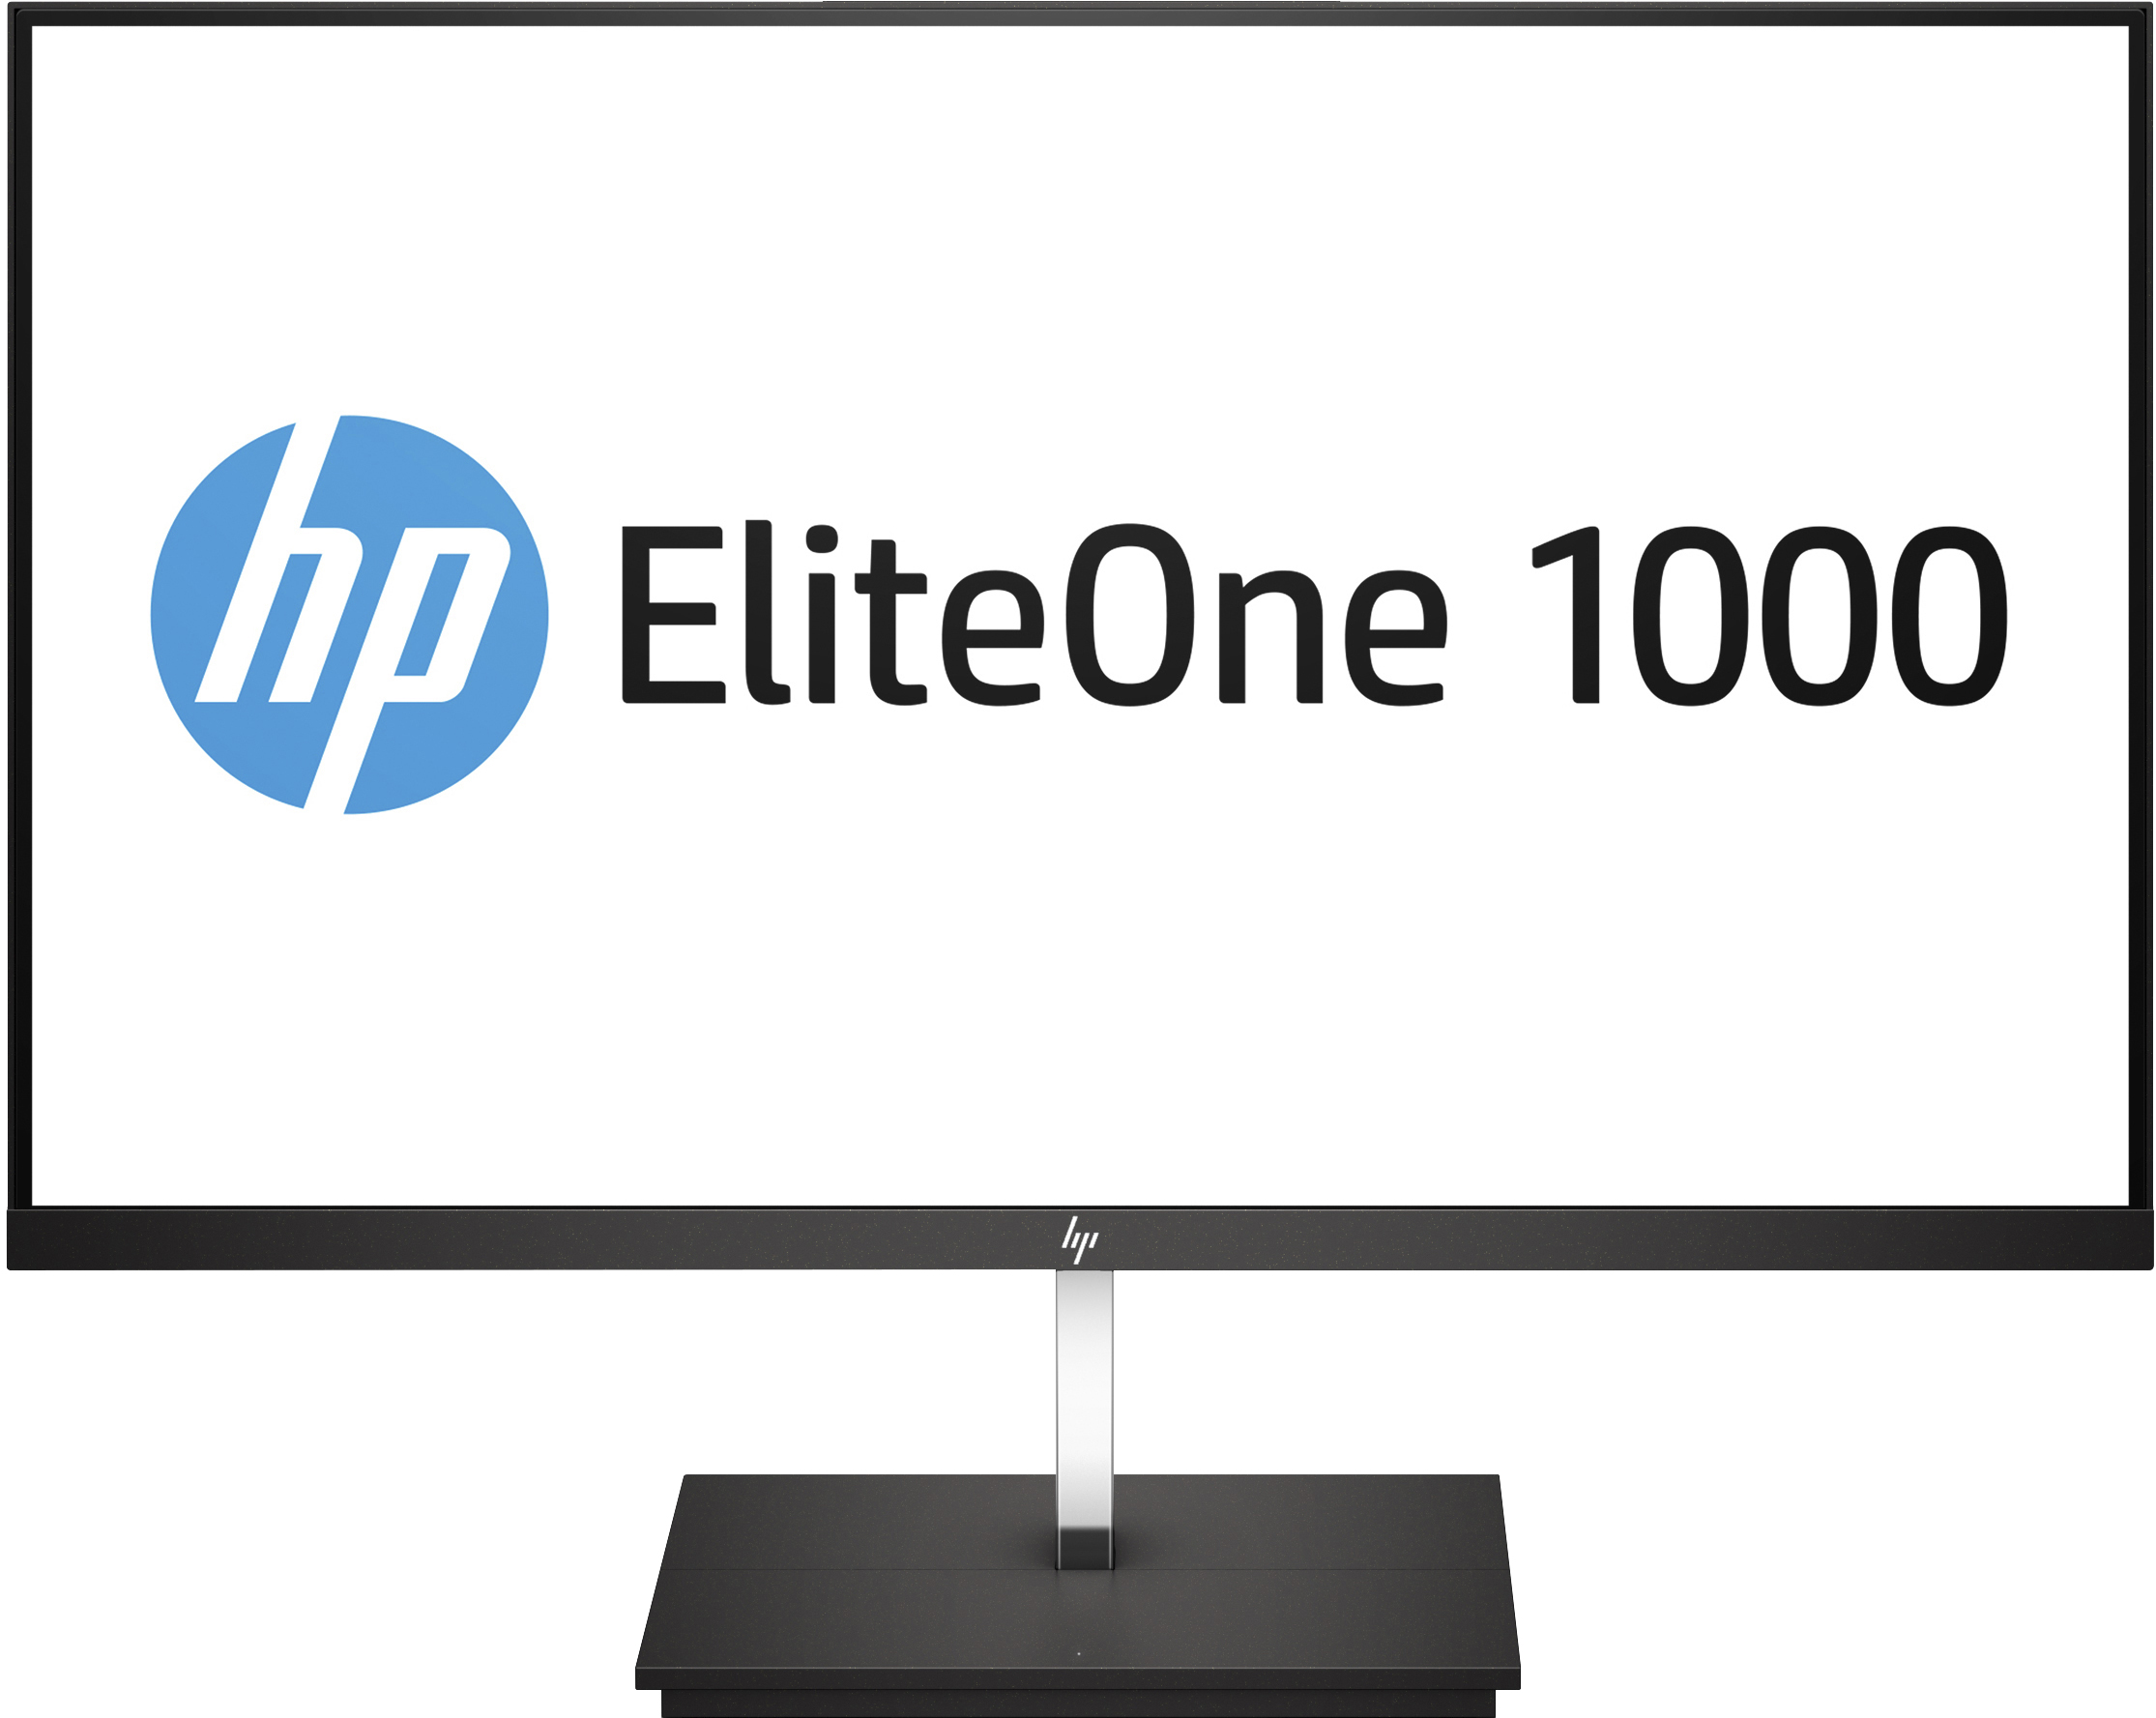 HP EliteOne 1000